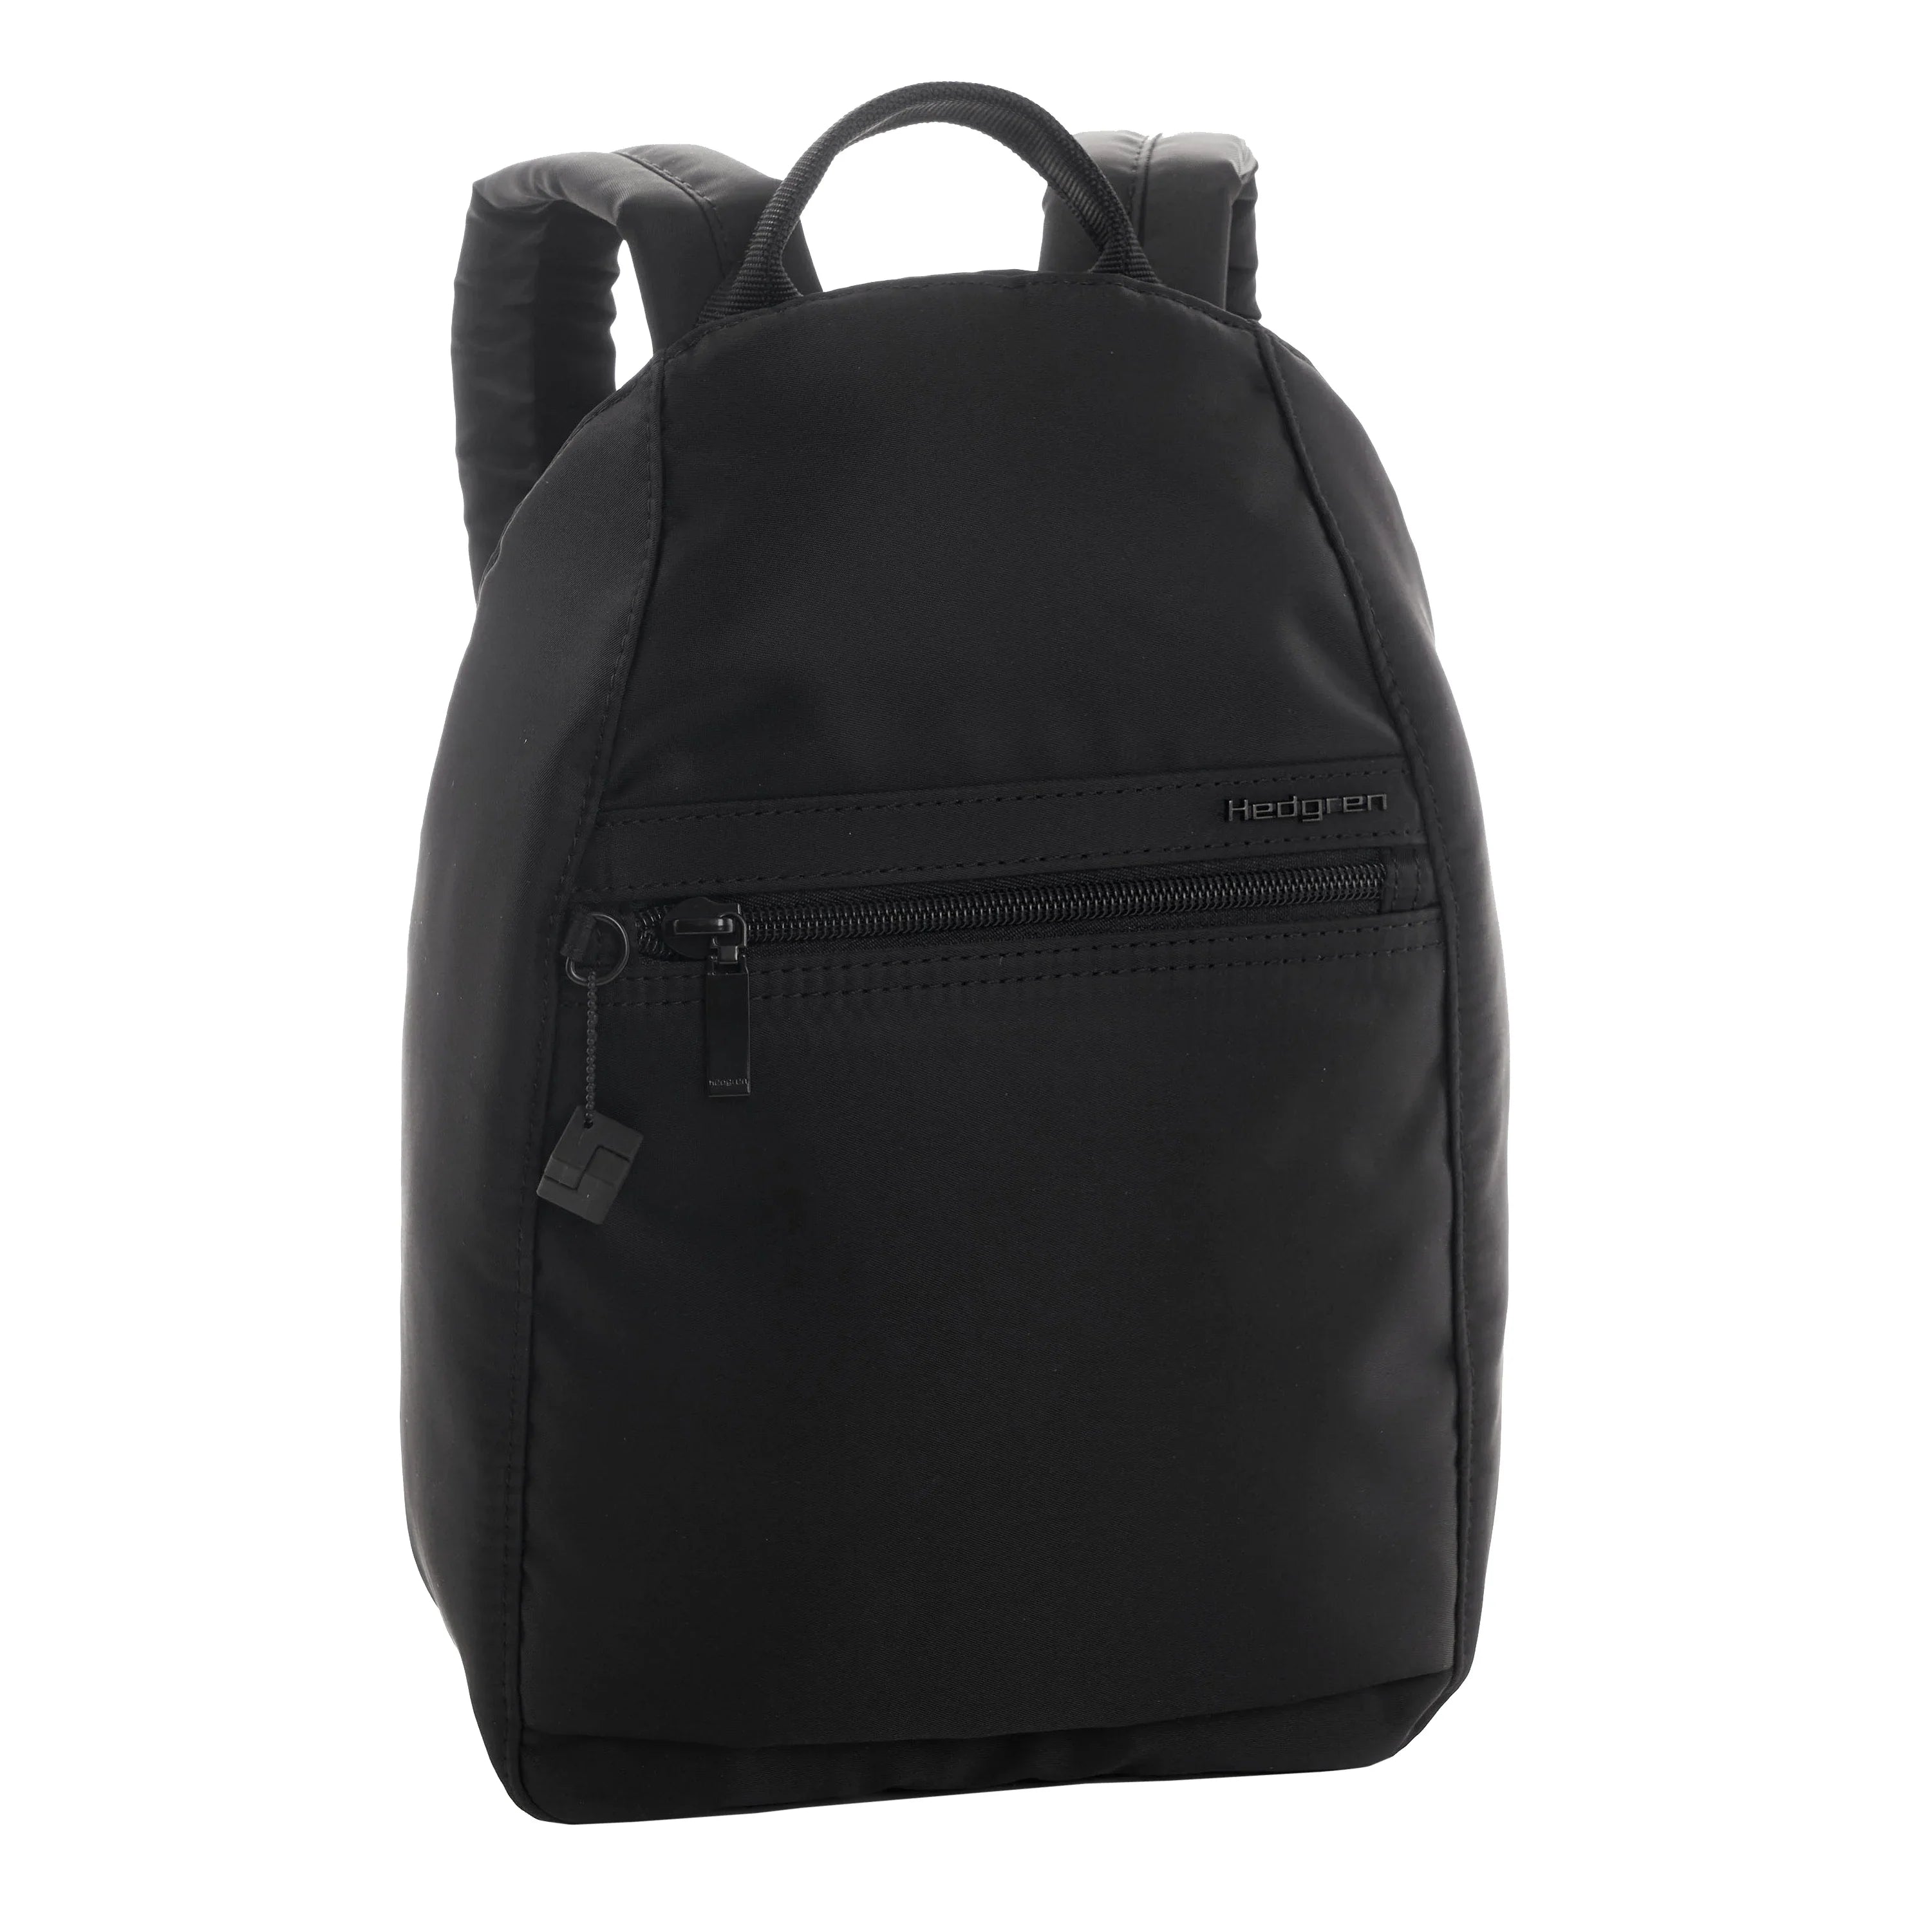 Hedgren Inner City 2 Vogue RFID backpack 30 cm - black